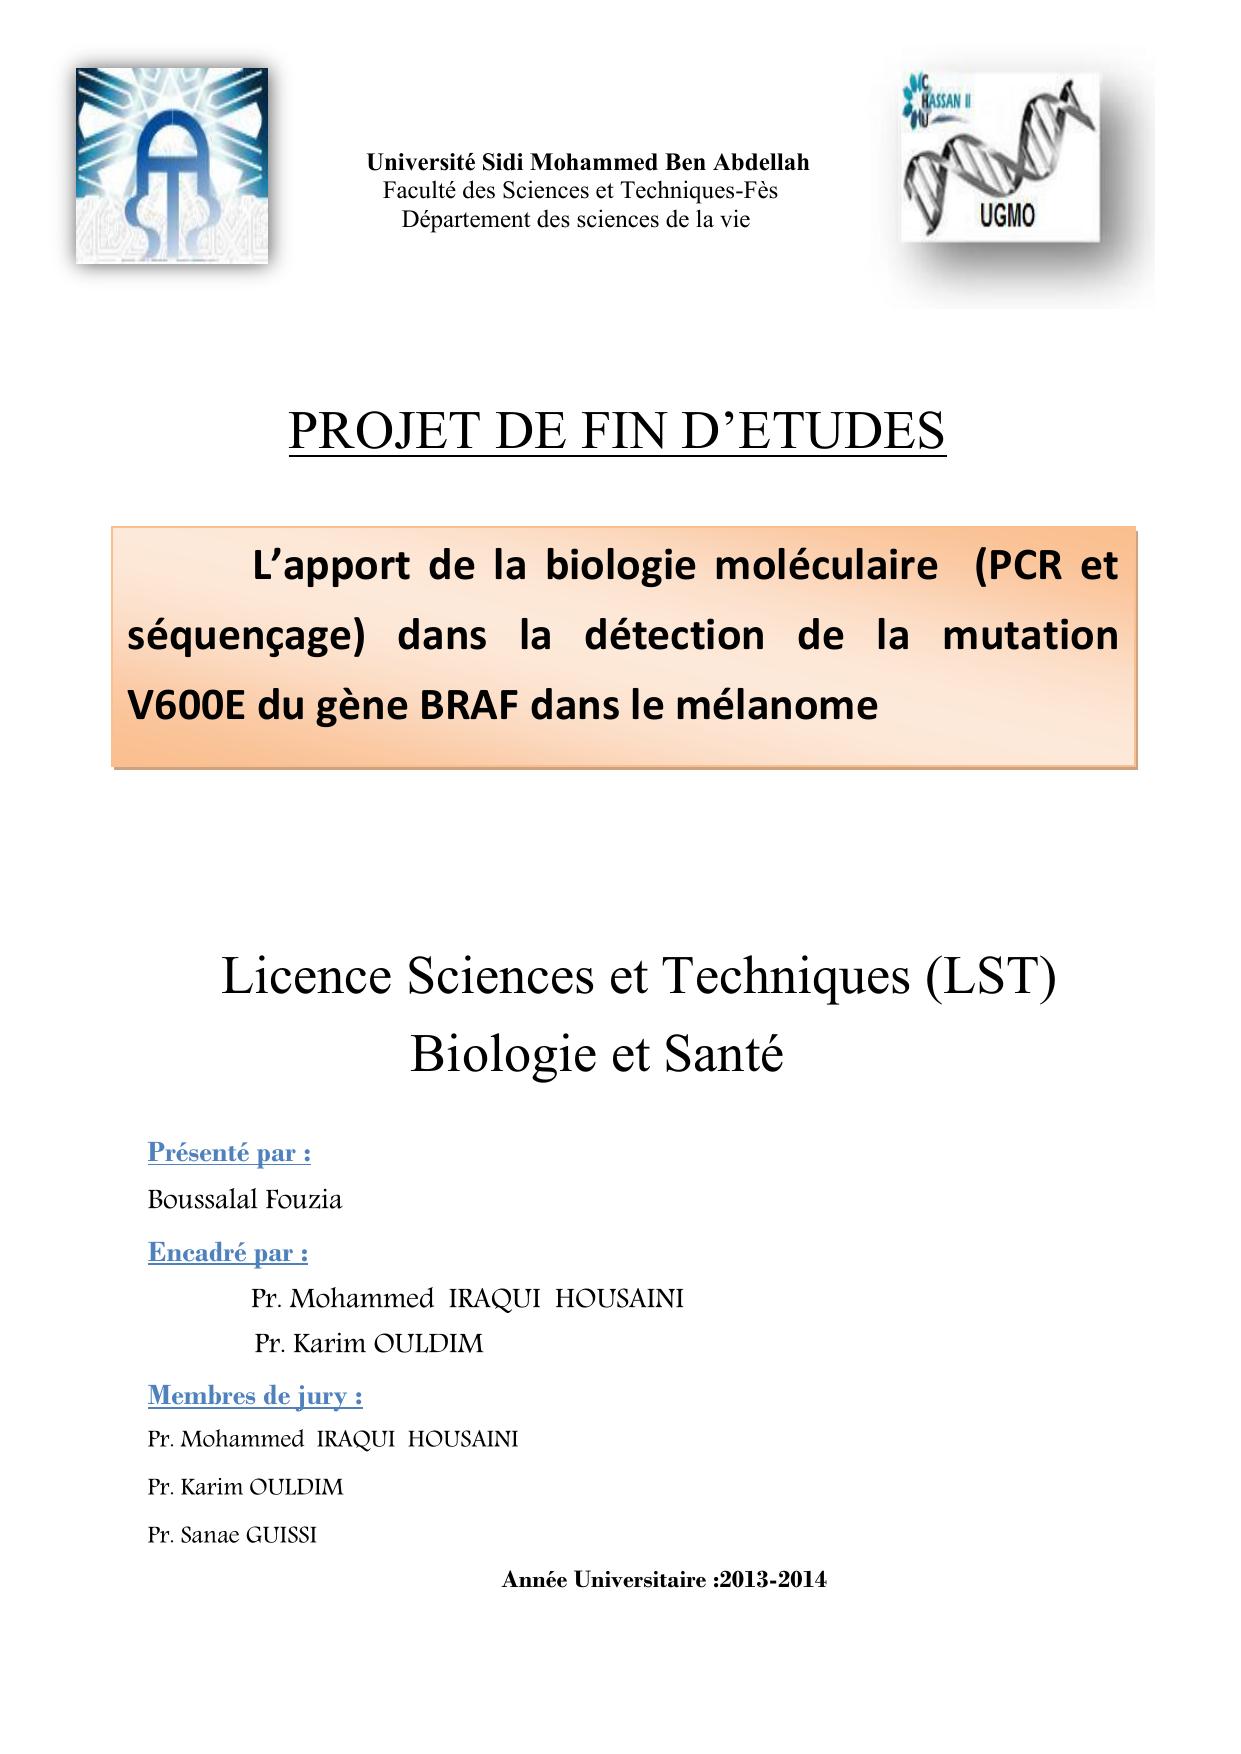 L’apport de la biologie moléculaire (PCR et séquençage) dans la détection de la mutation V600E du gène BRAF dans le mélanome